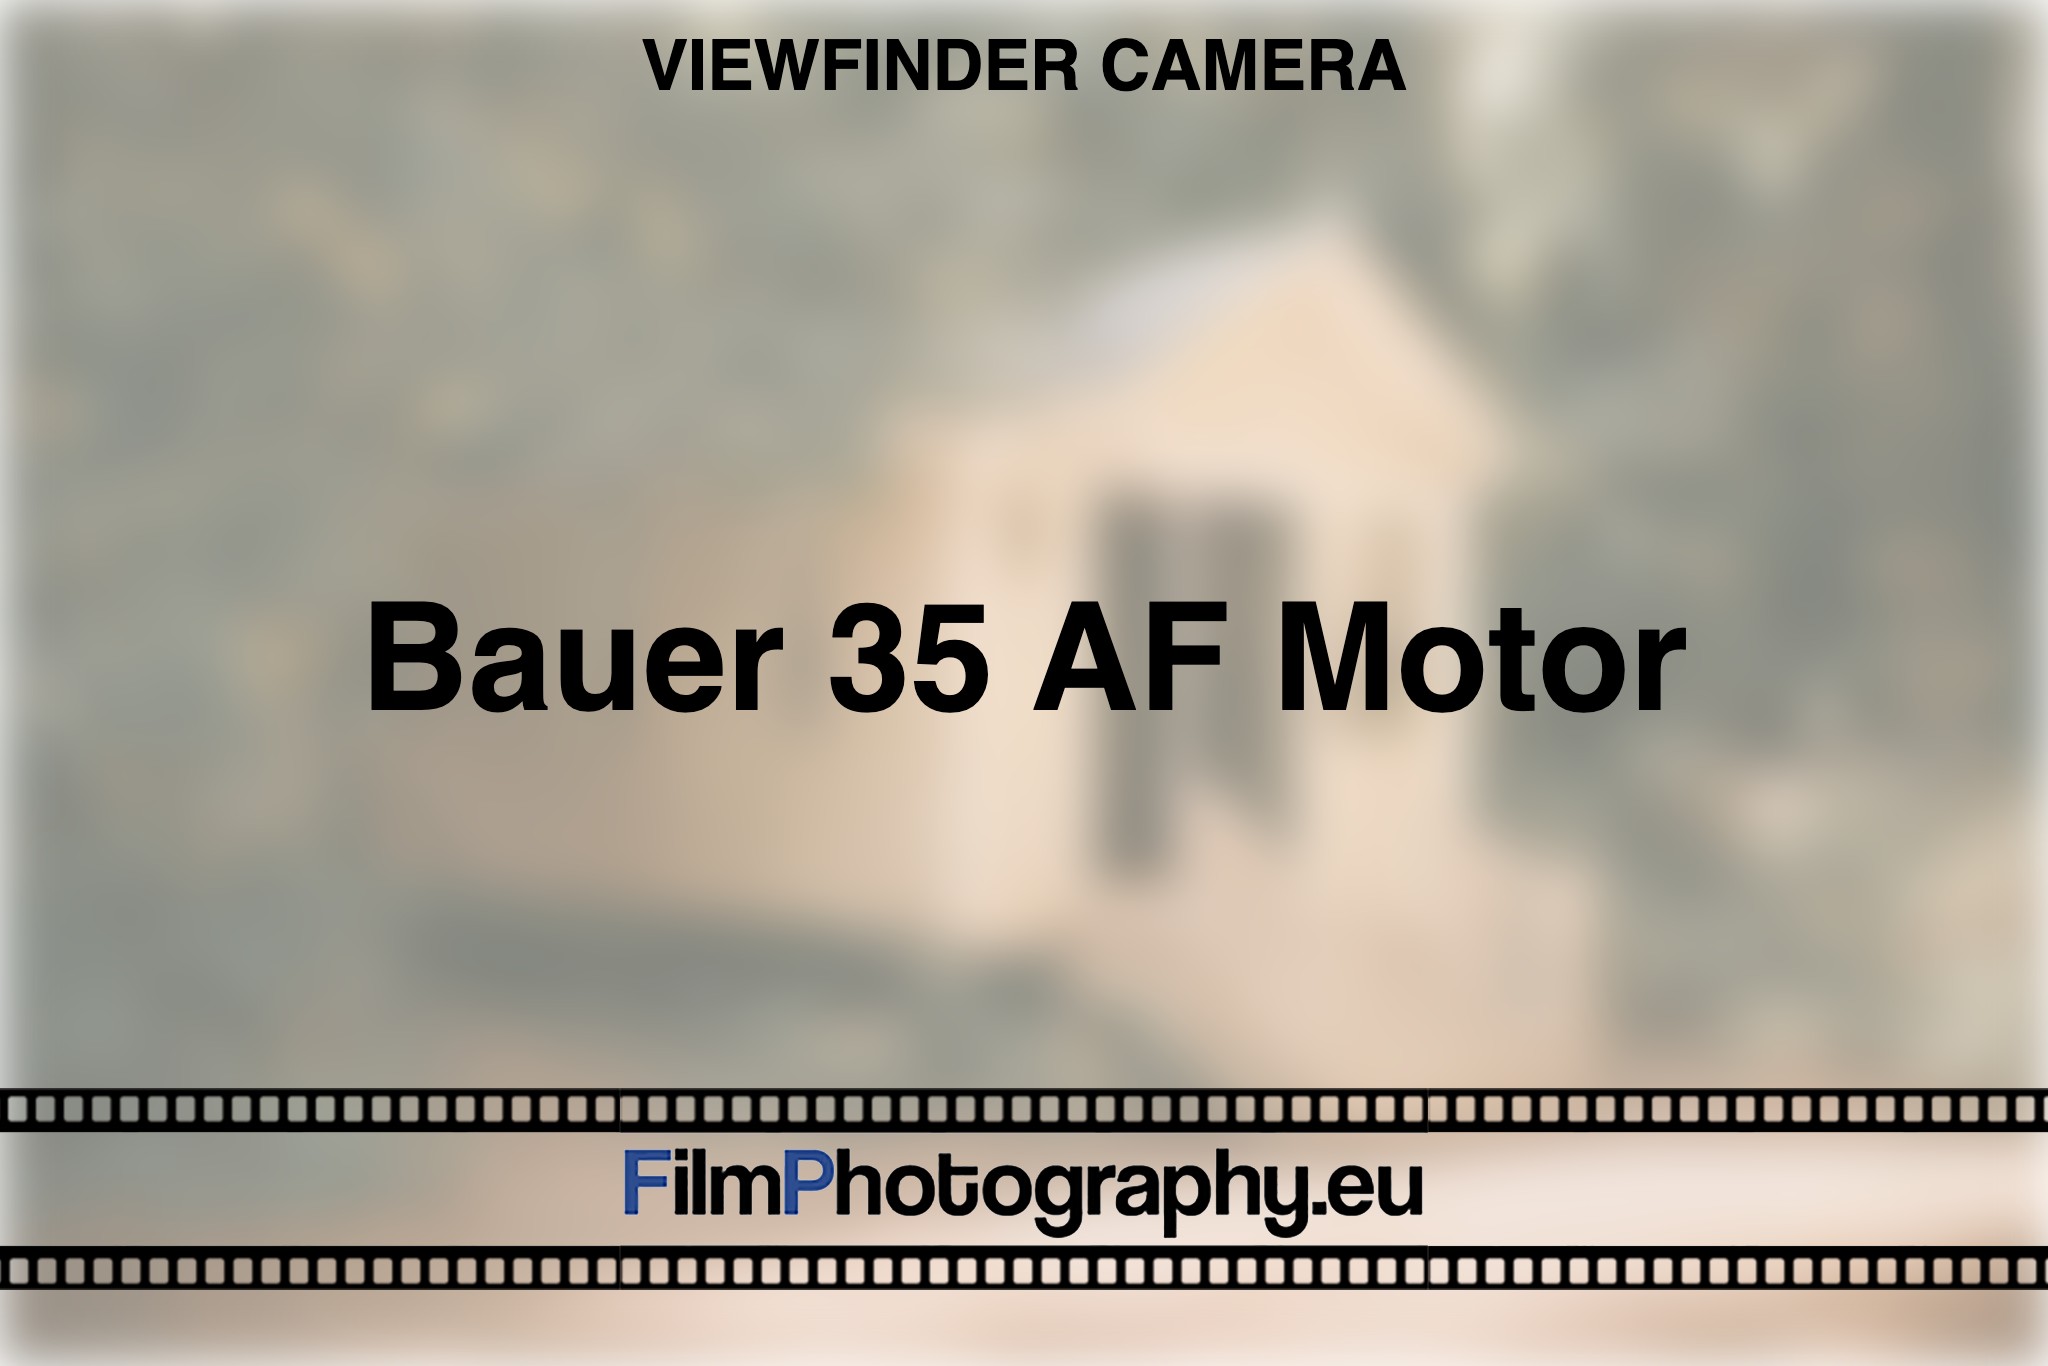 bauer-35-af-motor-viewfinder-camera-bnv